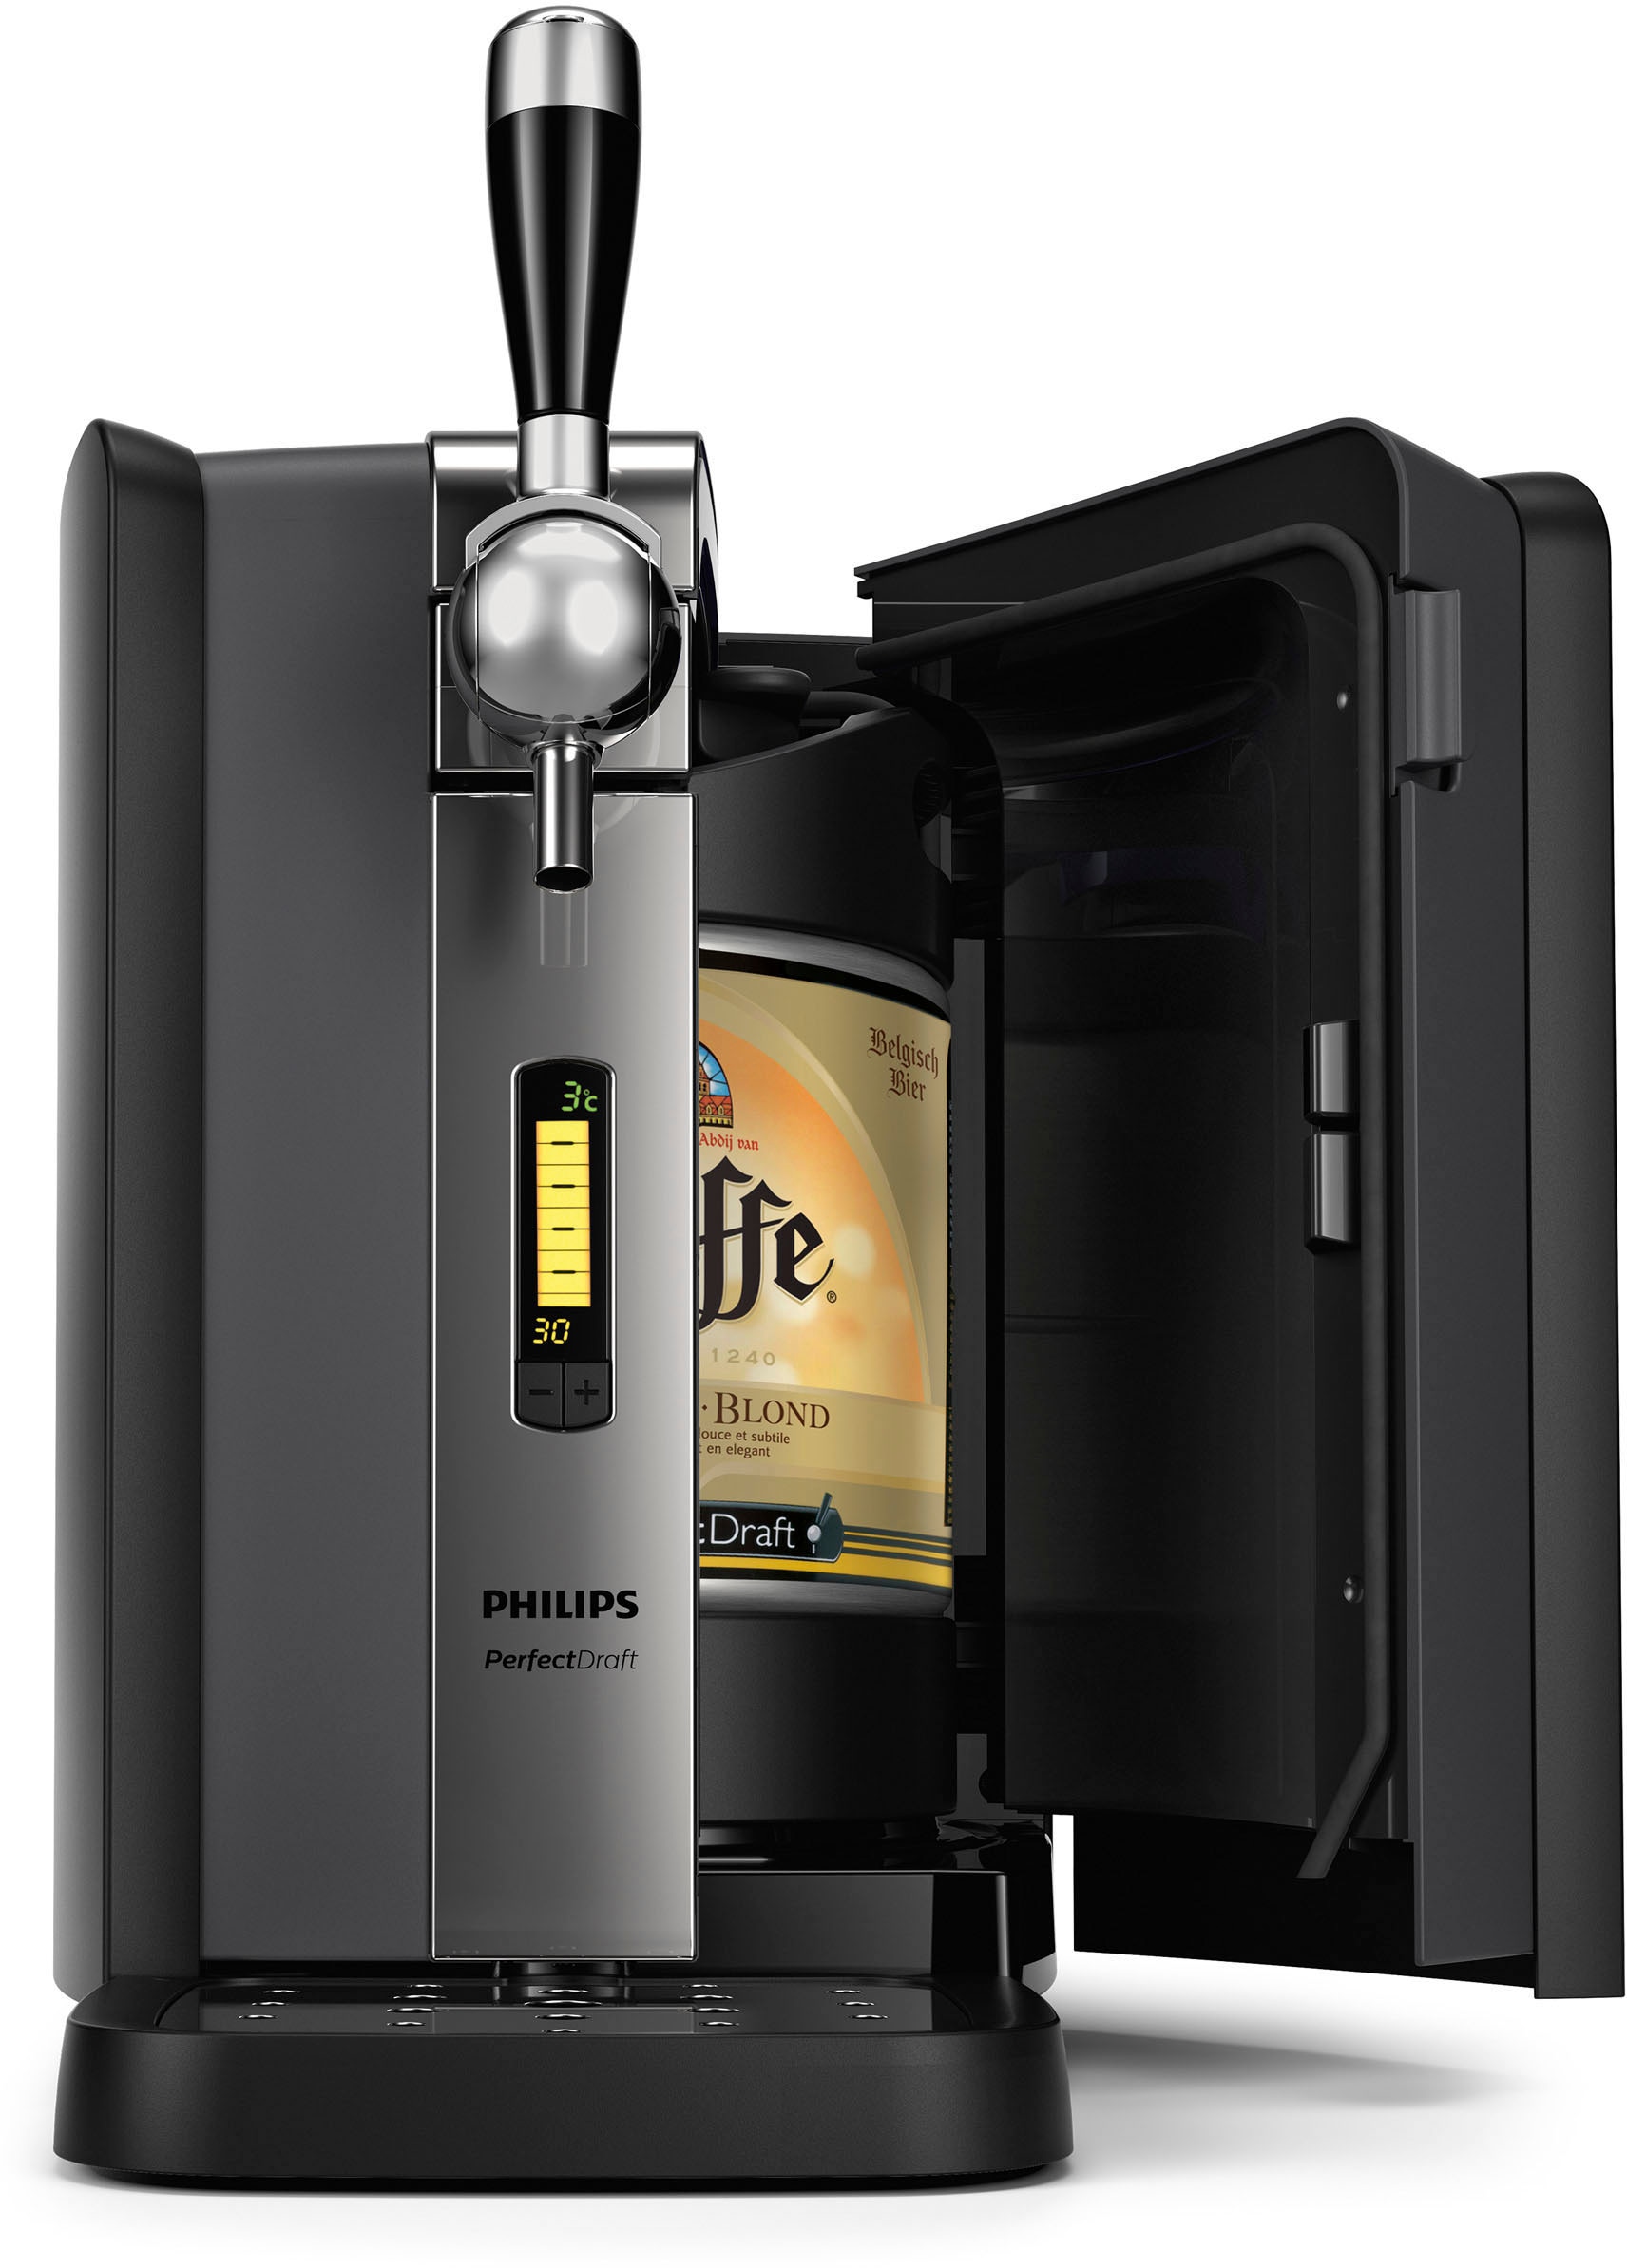 Philips Bierzapfanlage »HD3720/25«, 6 Liter-Fässer, LCD-Display, 1,5 Bar, 3°C Biertemperatur